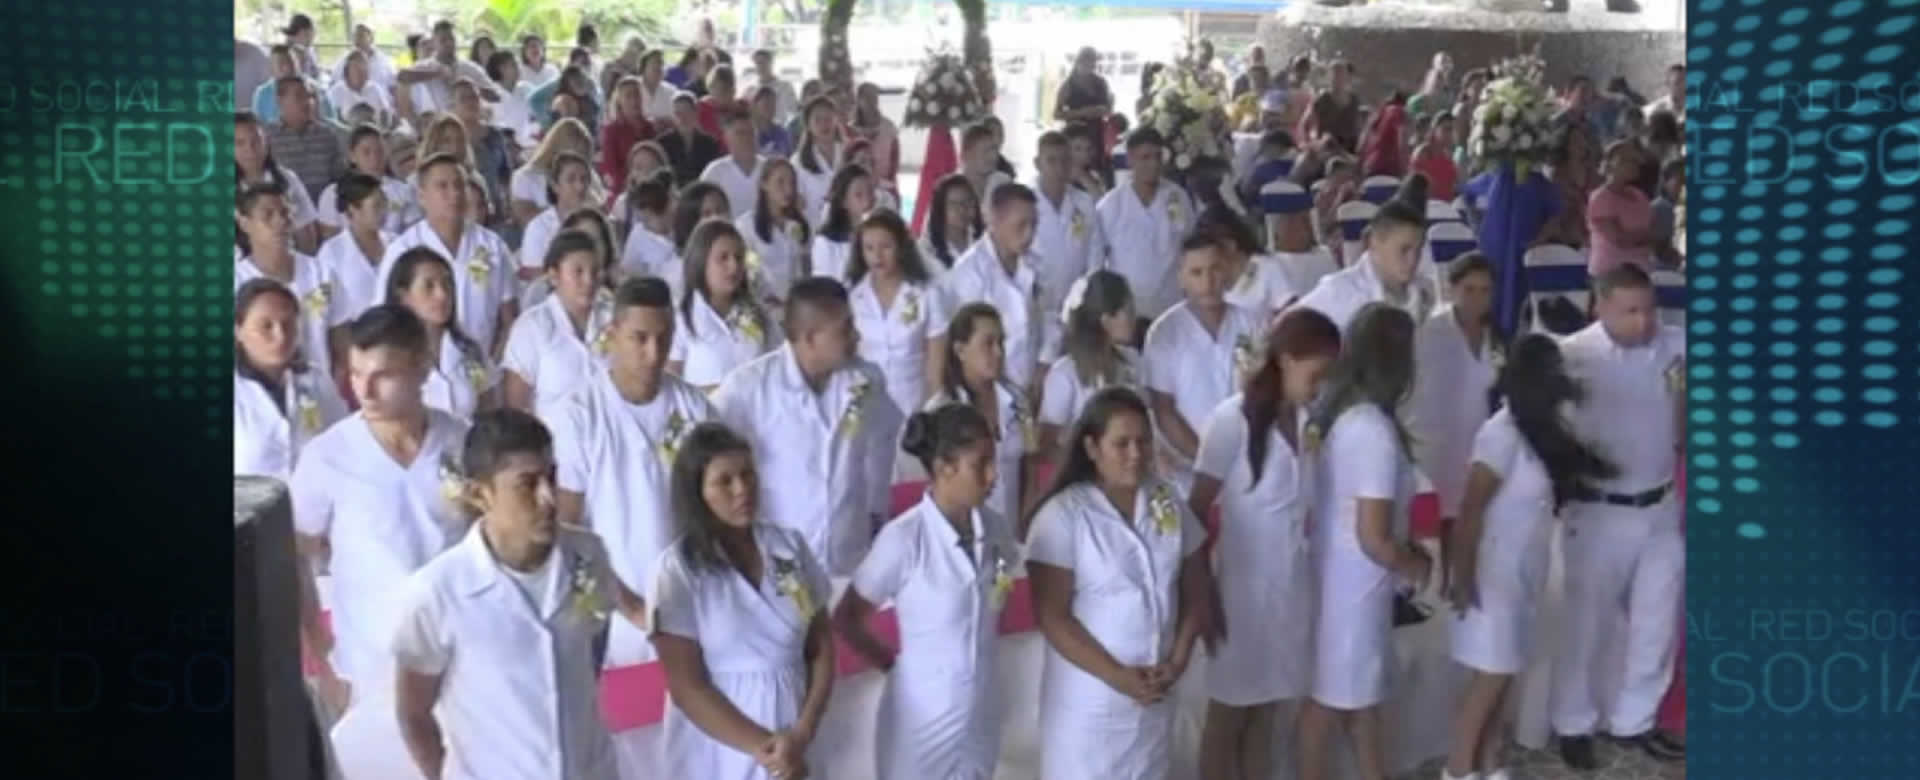 SILAIS Matagalpa gradúa a 60 nuevos auxiliares de enfermería